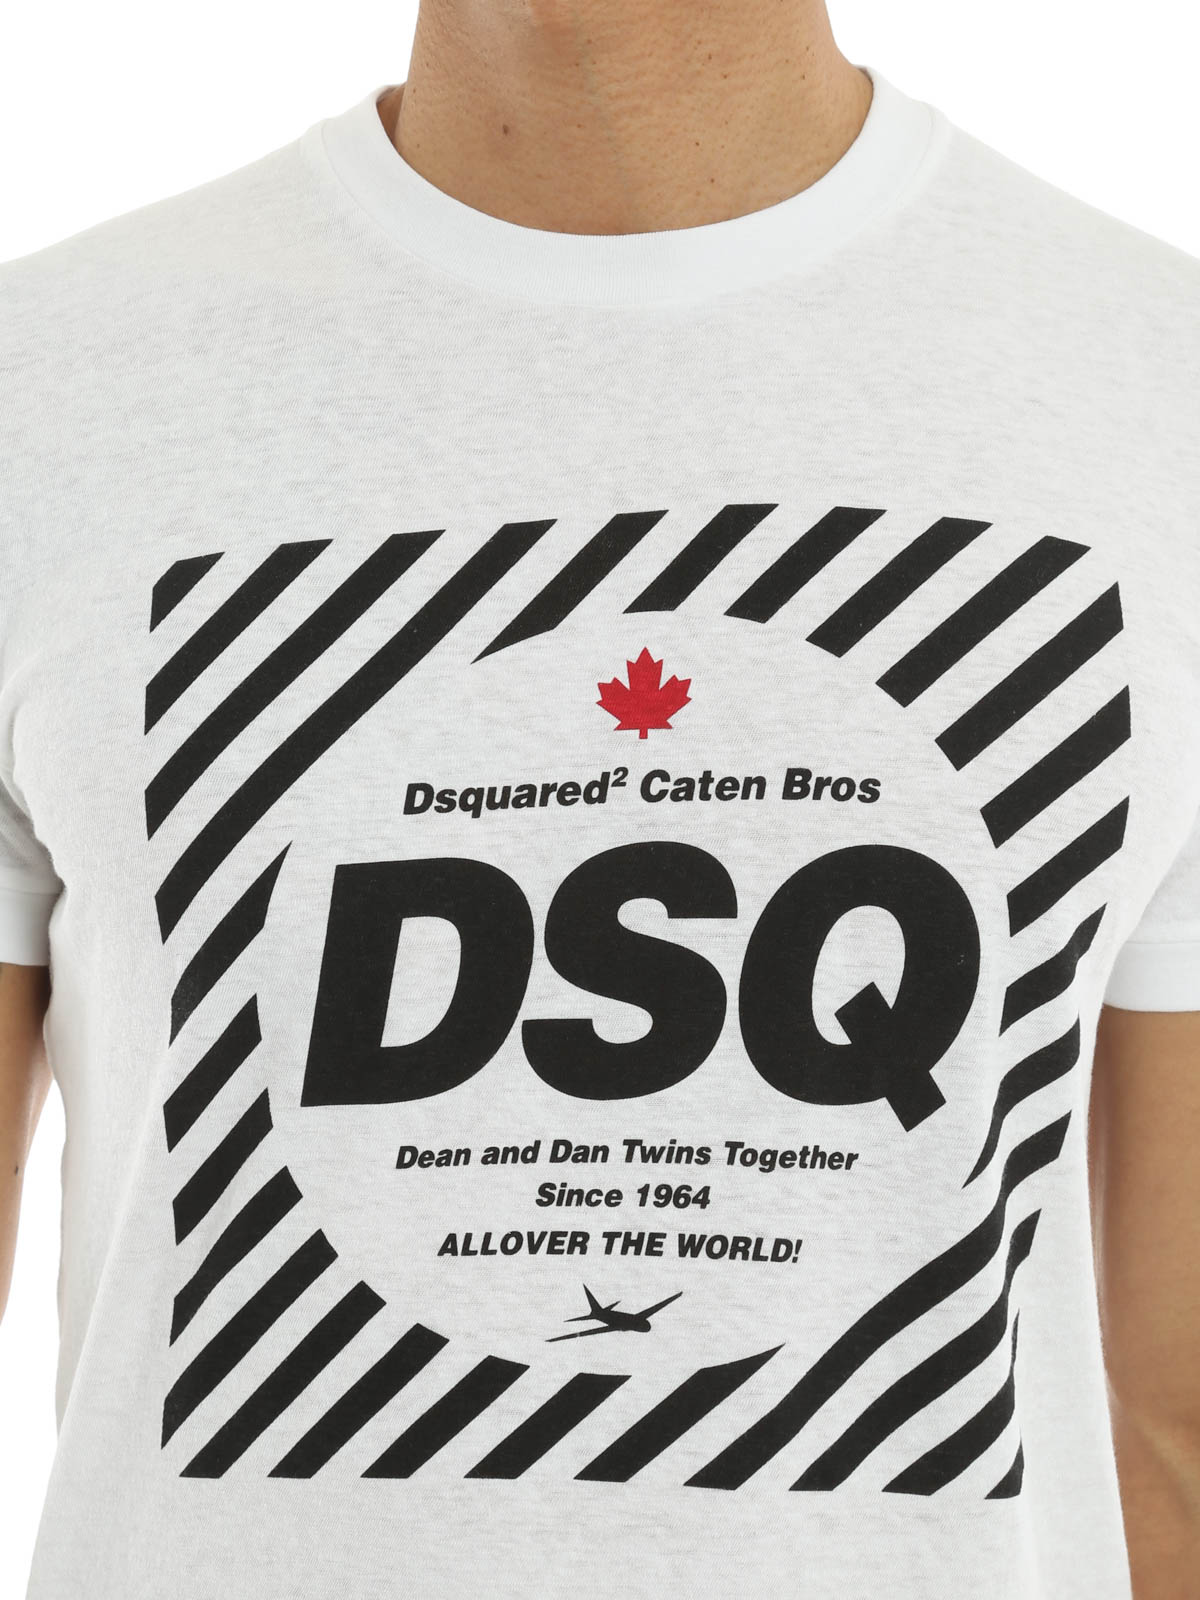 dsquared dean t shirt